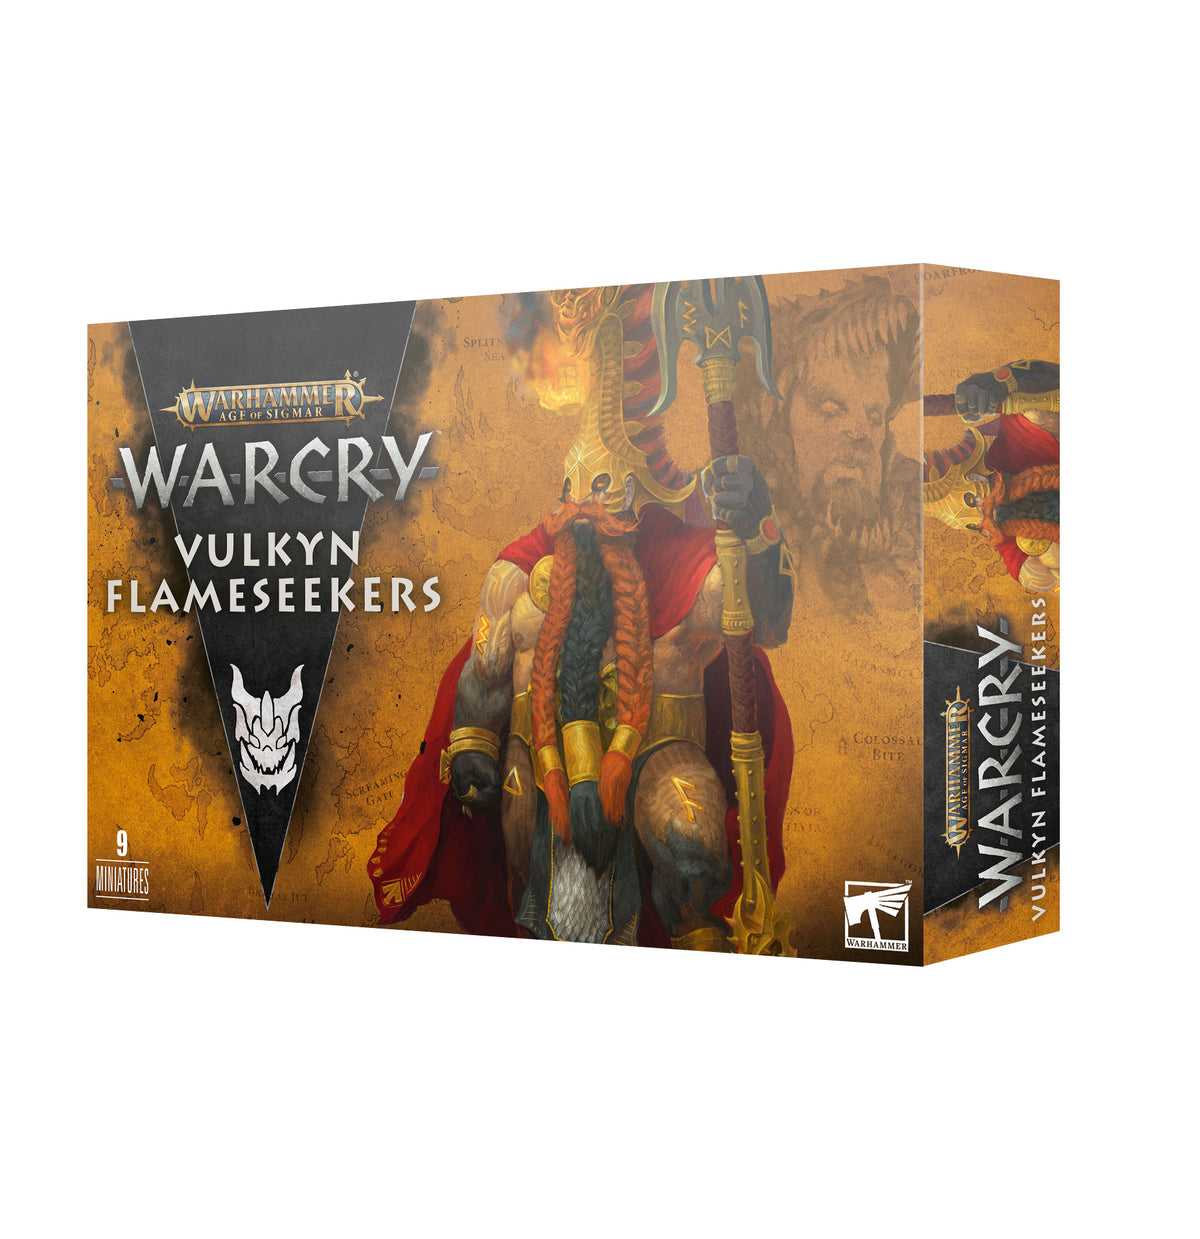 Warhammer Age Of Sigmar: WARCRY FYRESLAYERS: VULKYN FLAMESEEKERS